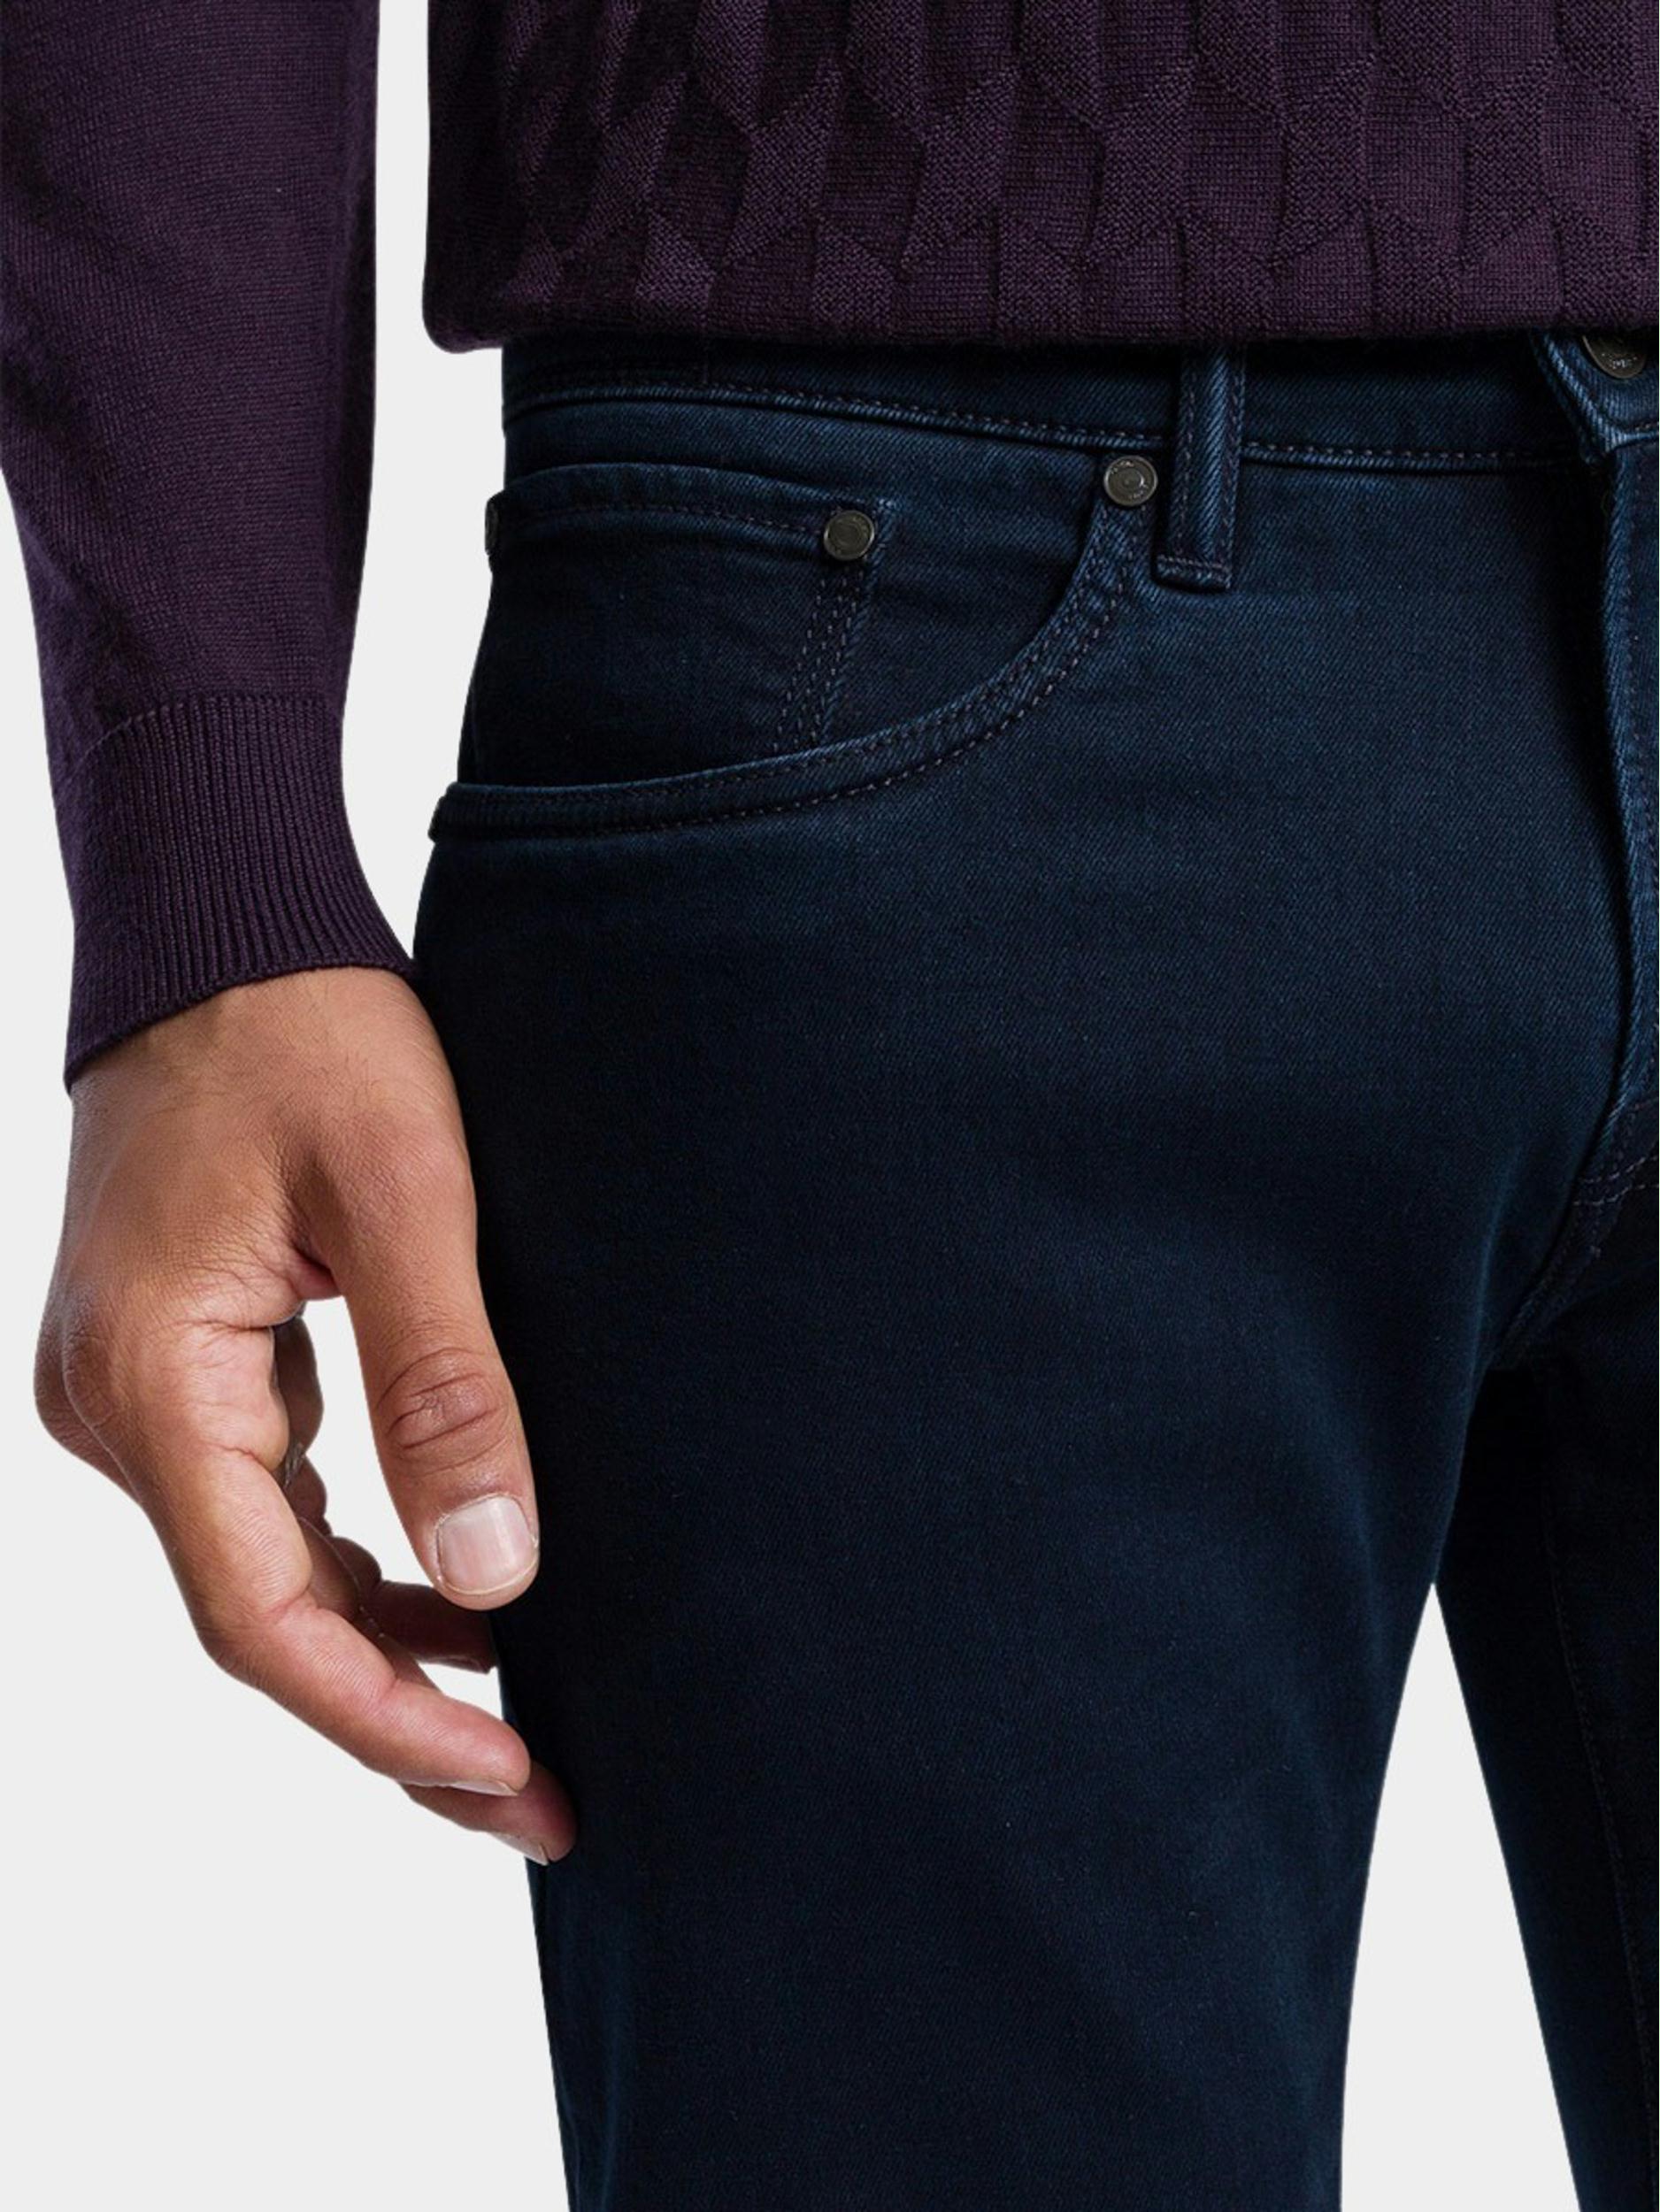 Pierre Cardin 5-Pocket Jeans Blauw  C7 35530.8051/6801